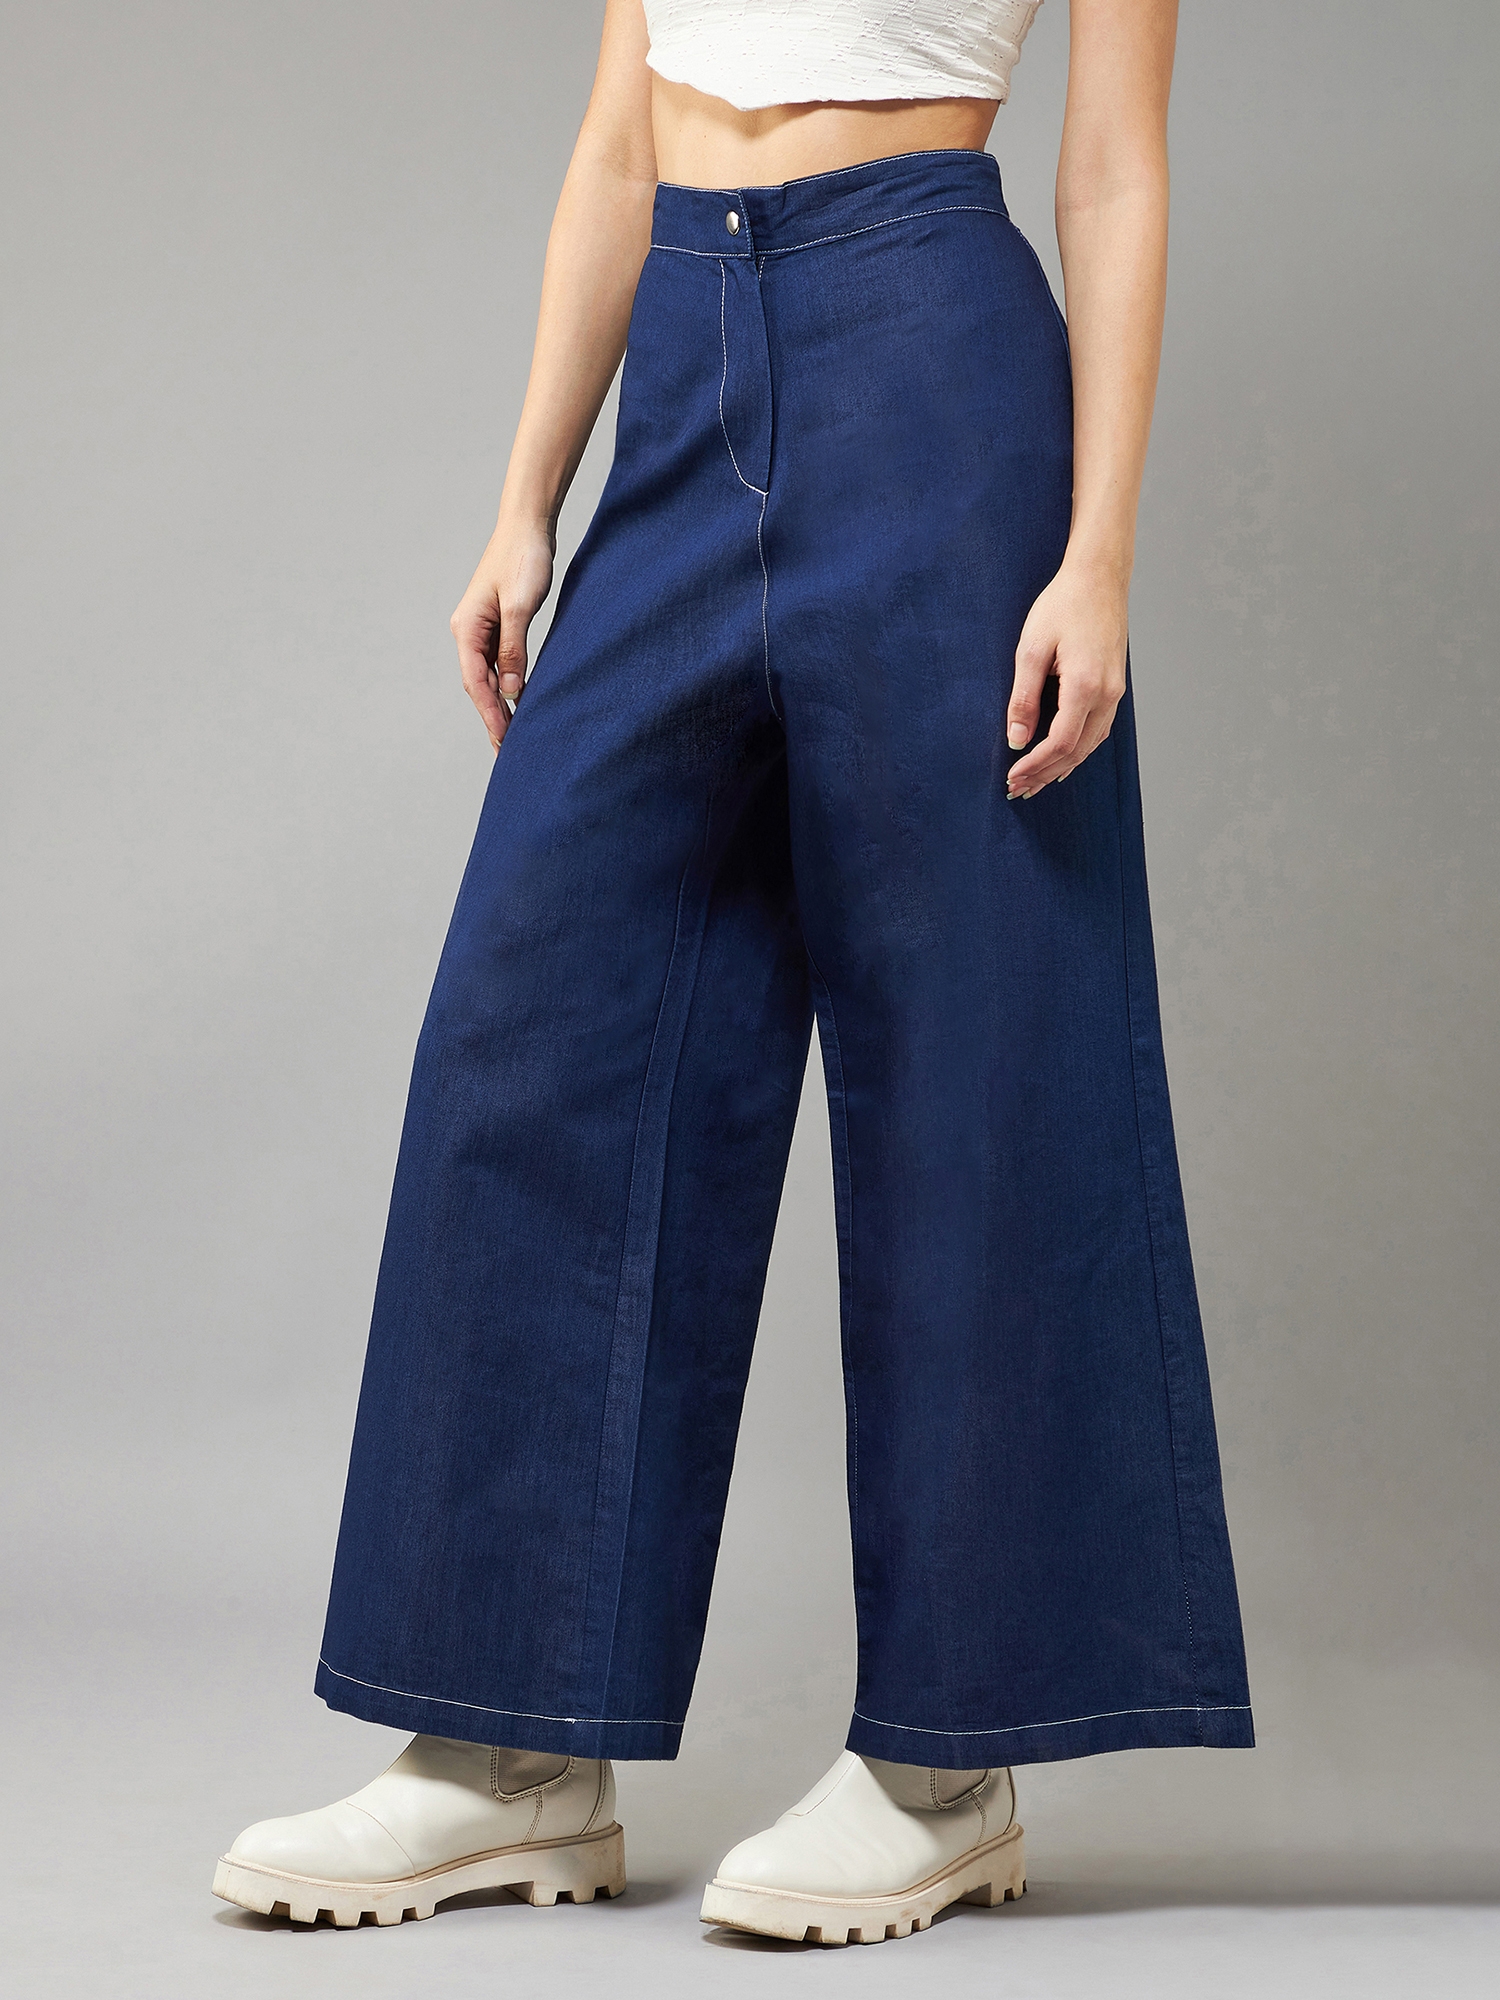 Women's Navy Blue Wide-Leg High Rise Clean Look Regular Length Denim Pants